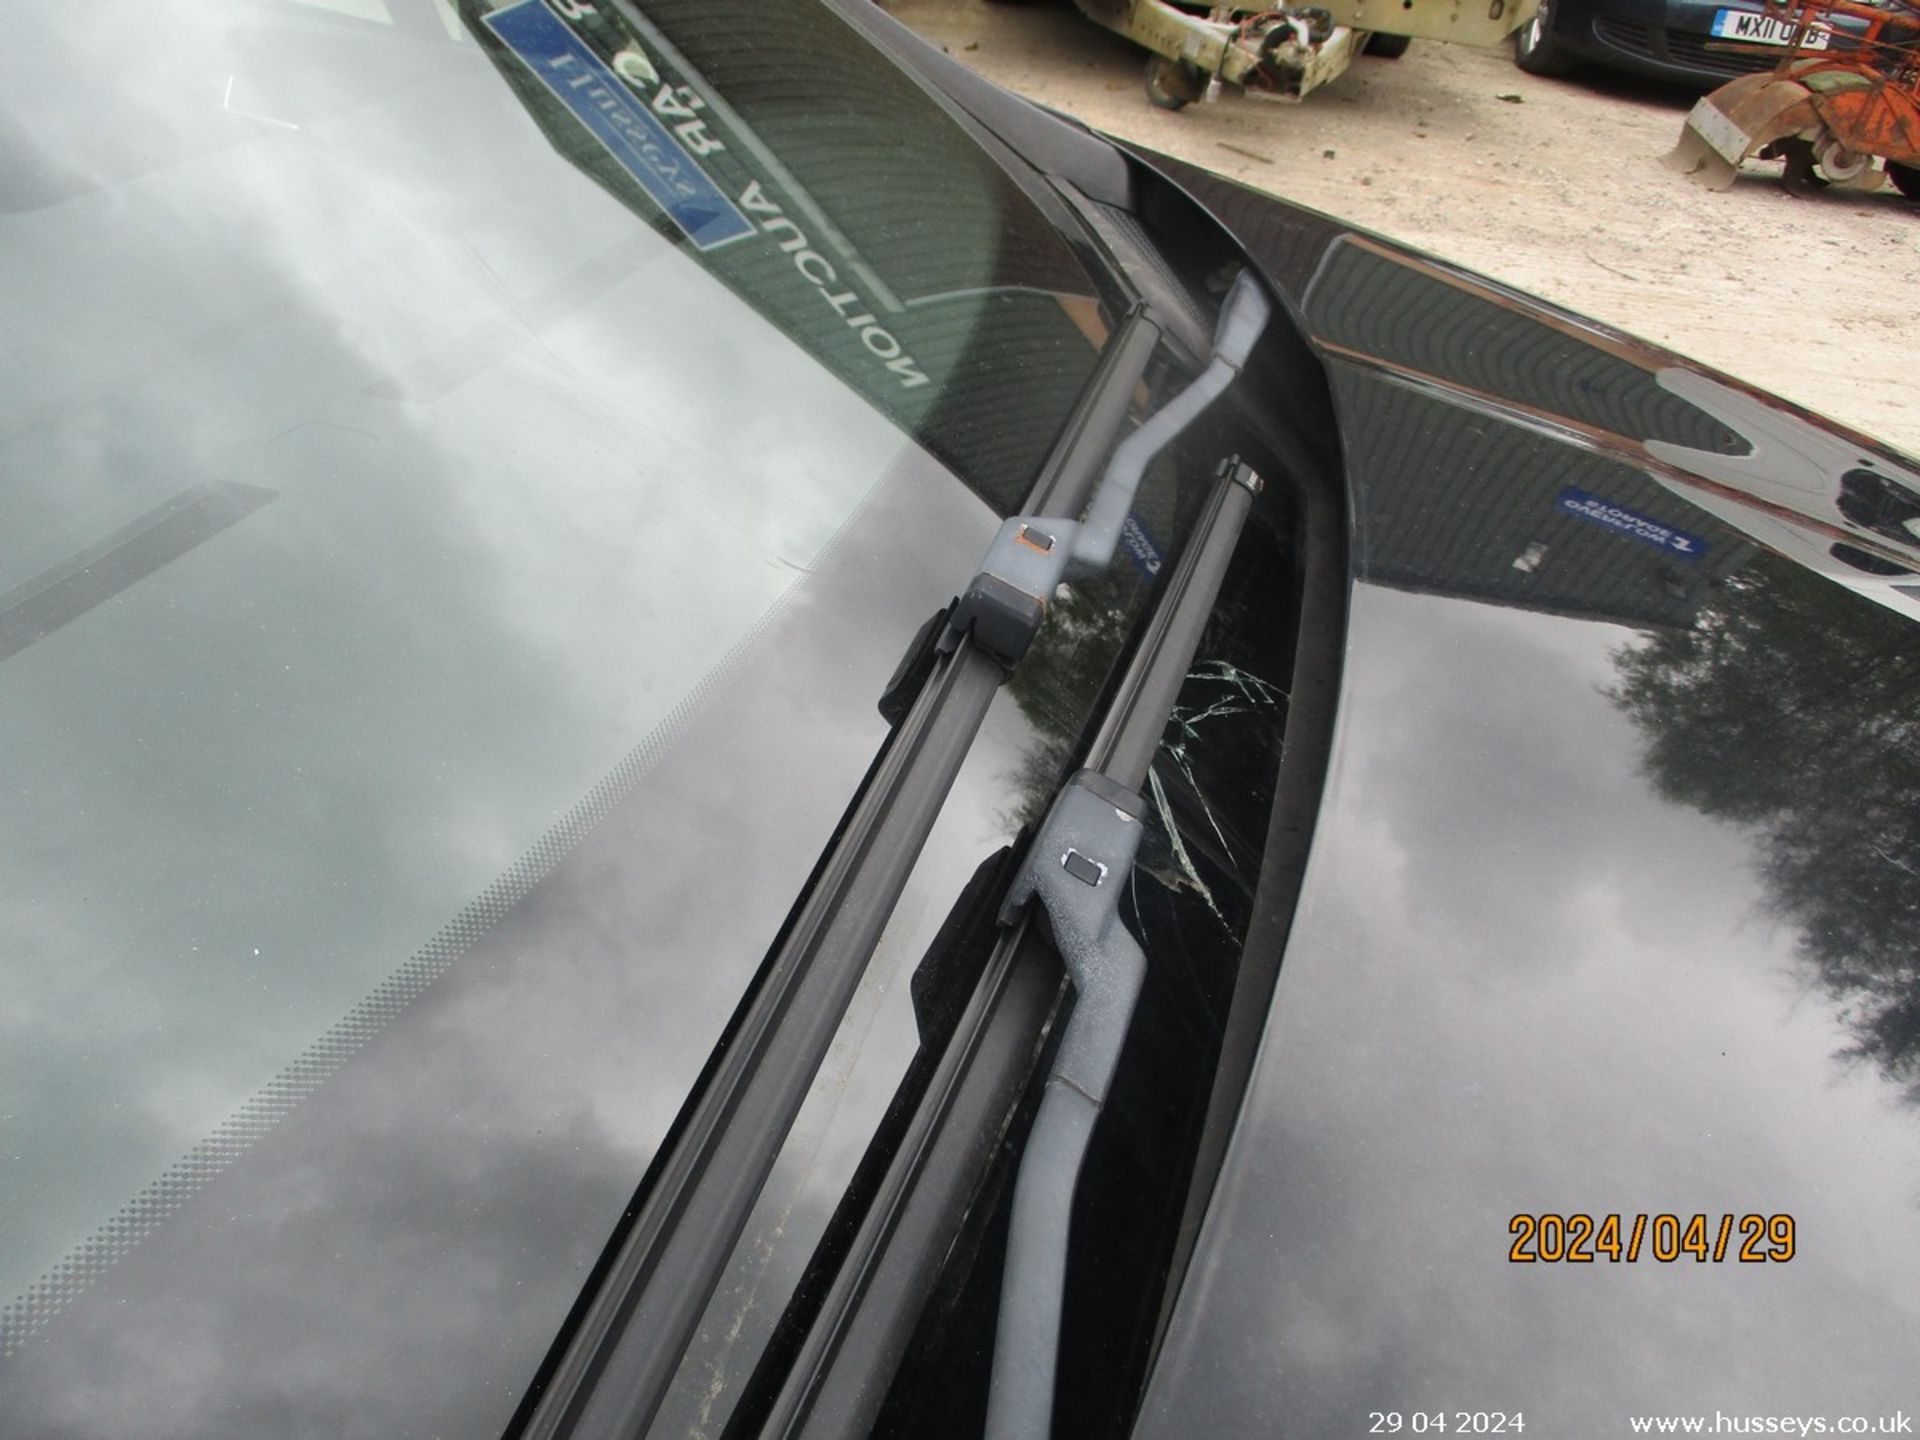 13/13 CITROEN DS4 DSIGN HDI - 1560cc 5dr Hatchback (Black, 135k) - Image 12 of 29